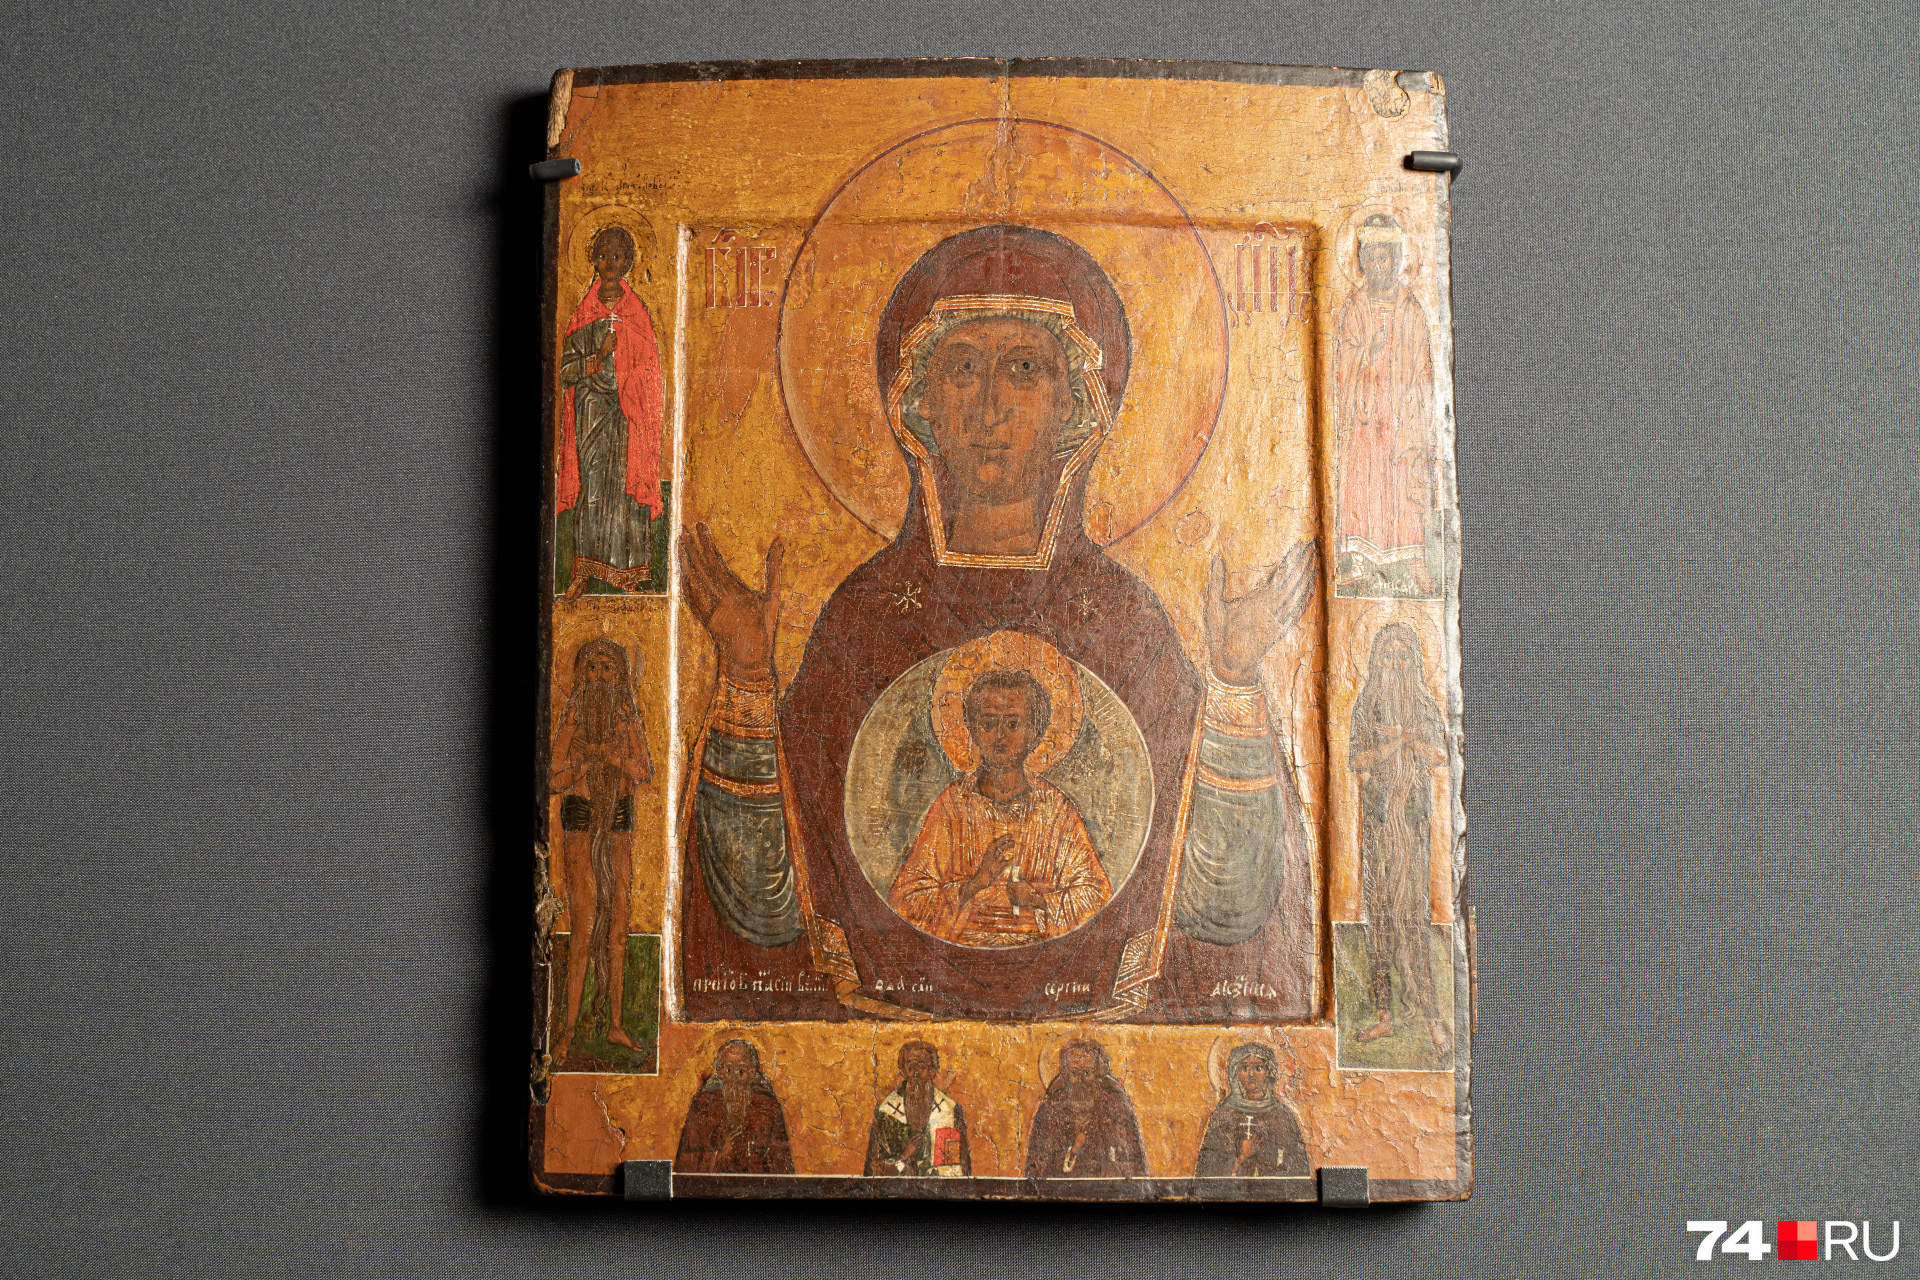 Эта икона самая ценная, с которой Виктору доводилось работать. Изображение Богоматери «Знамение» датируется XVI веком